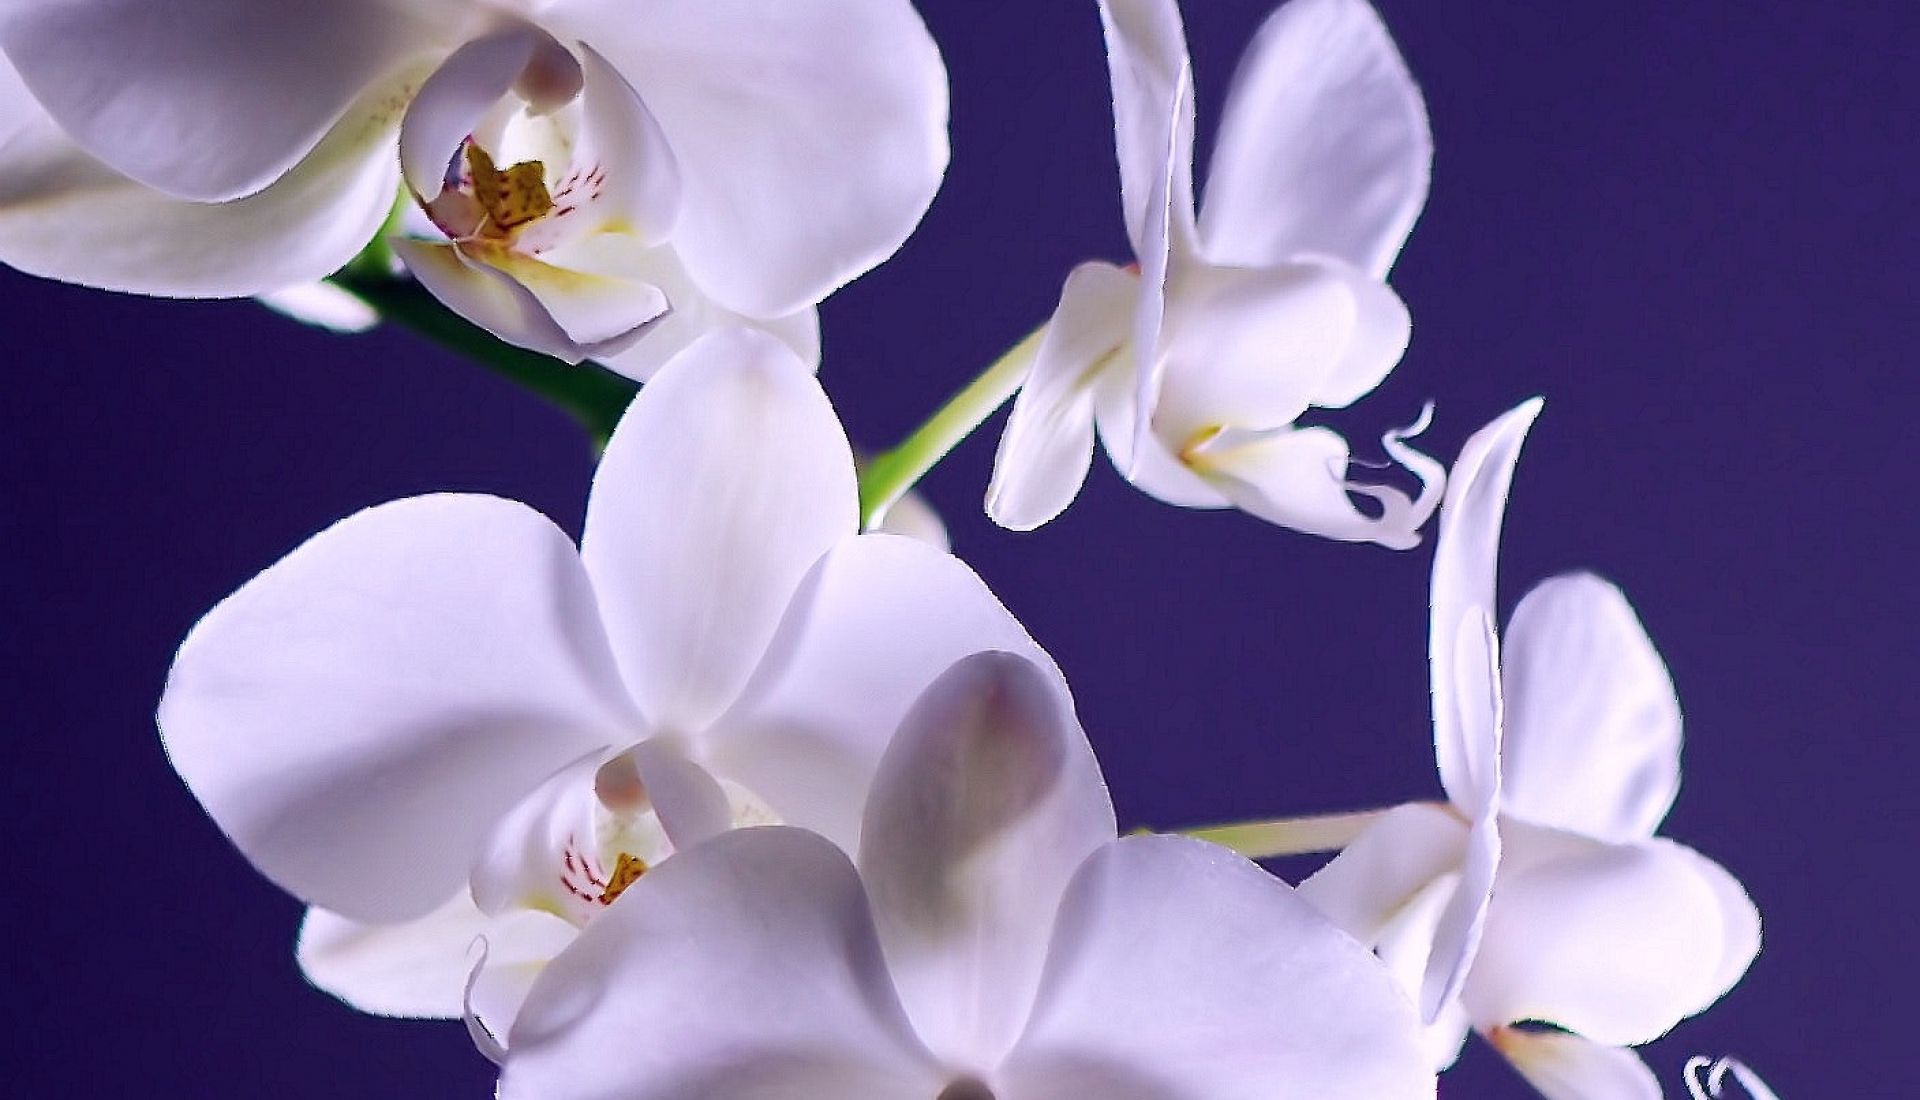 Sortie nature : découvrir les orchidées sauvages